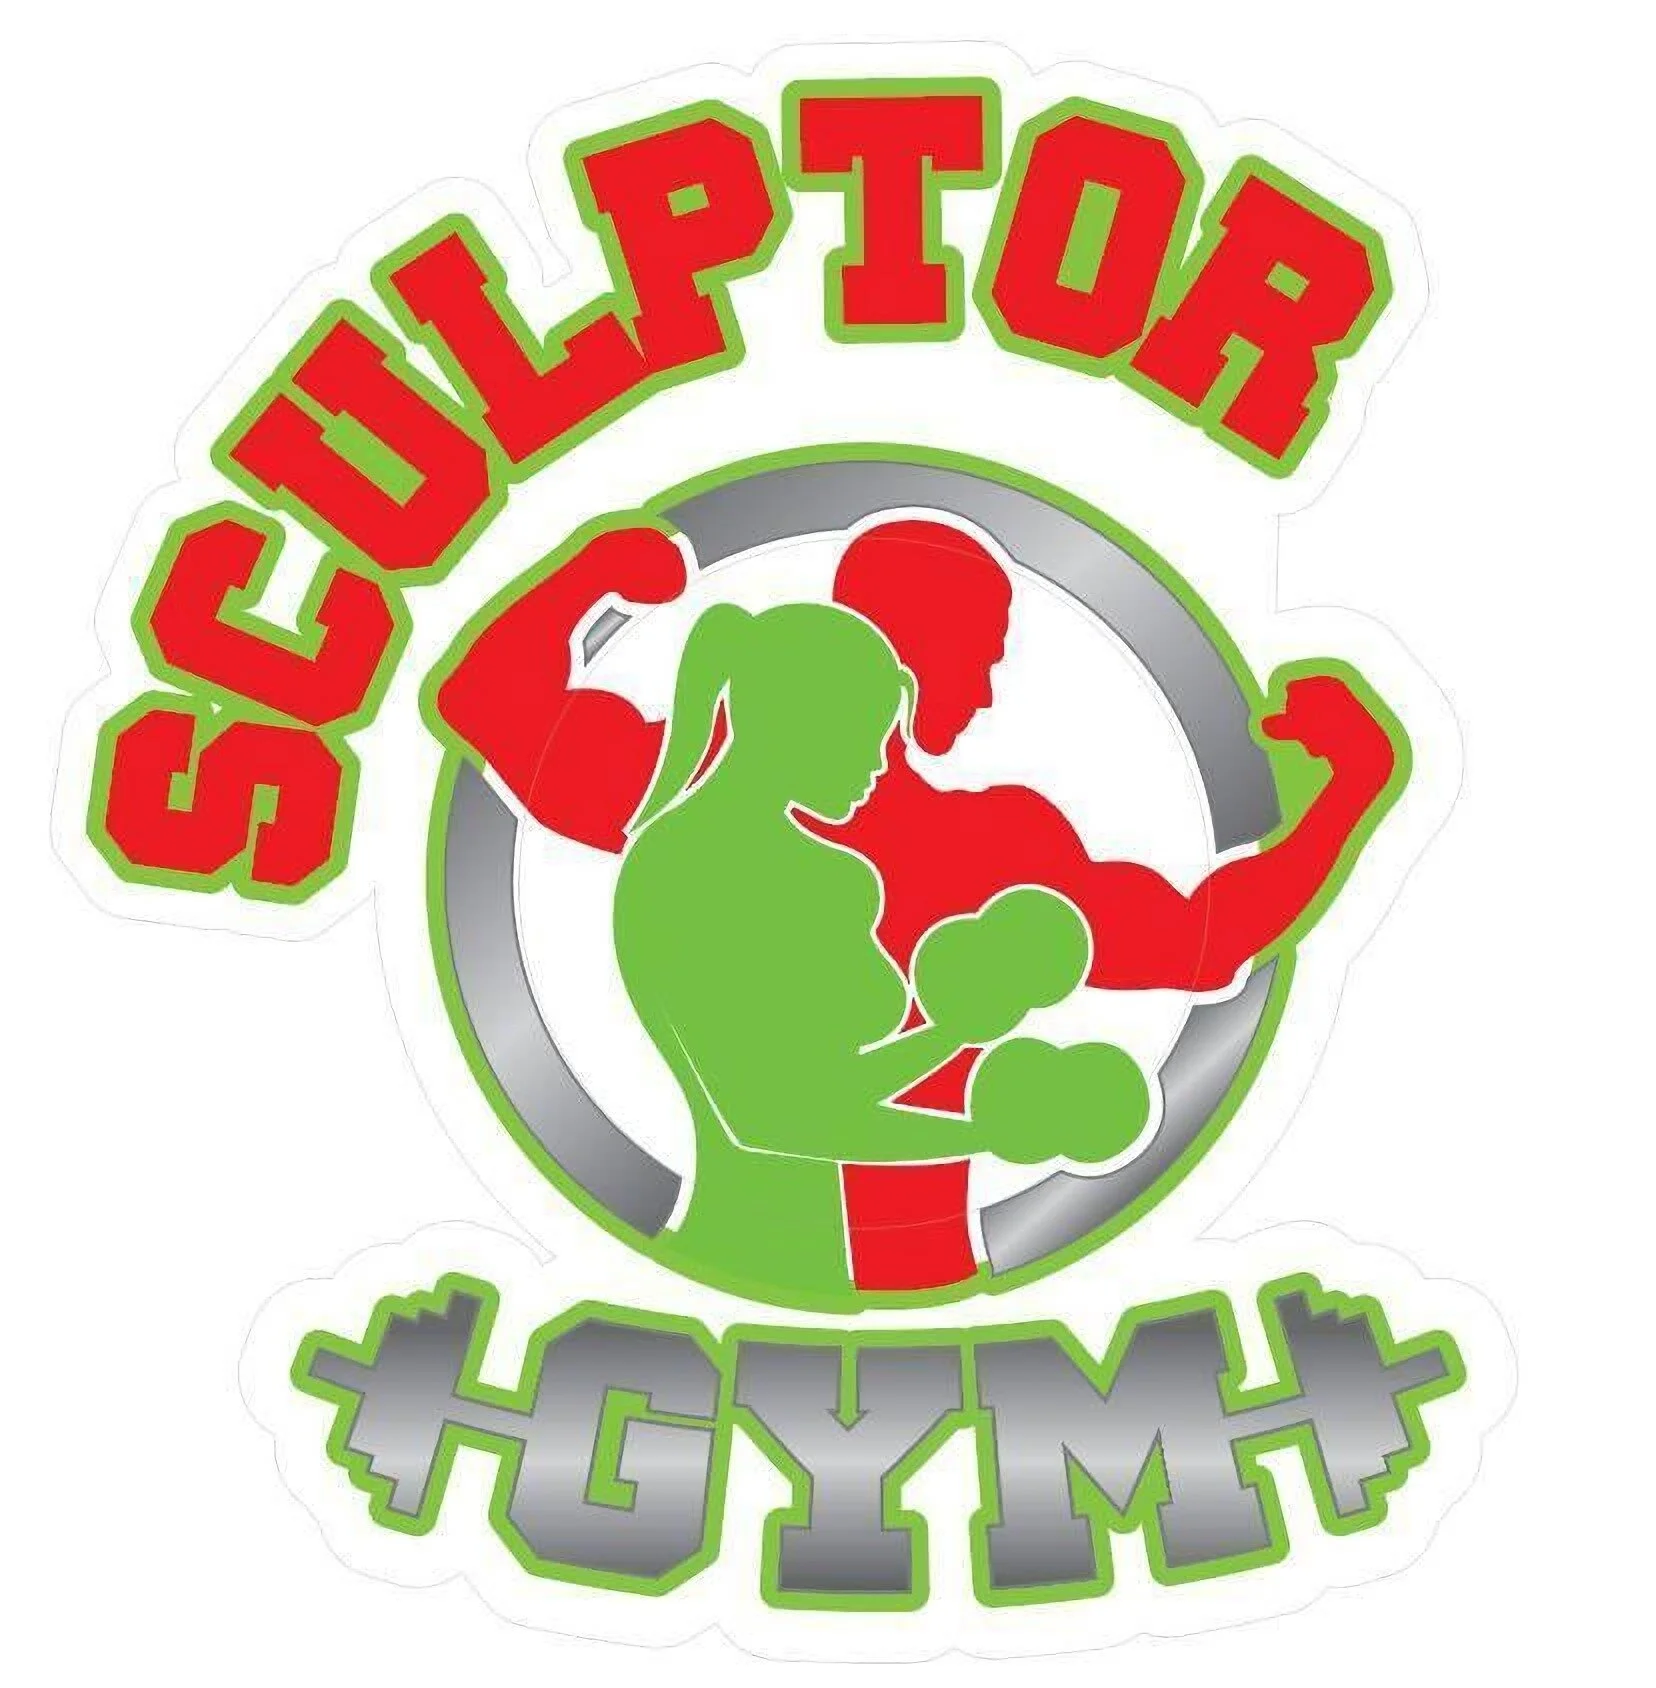 Sculptor Gym-2006